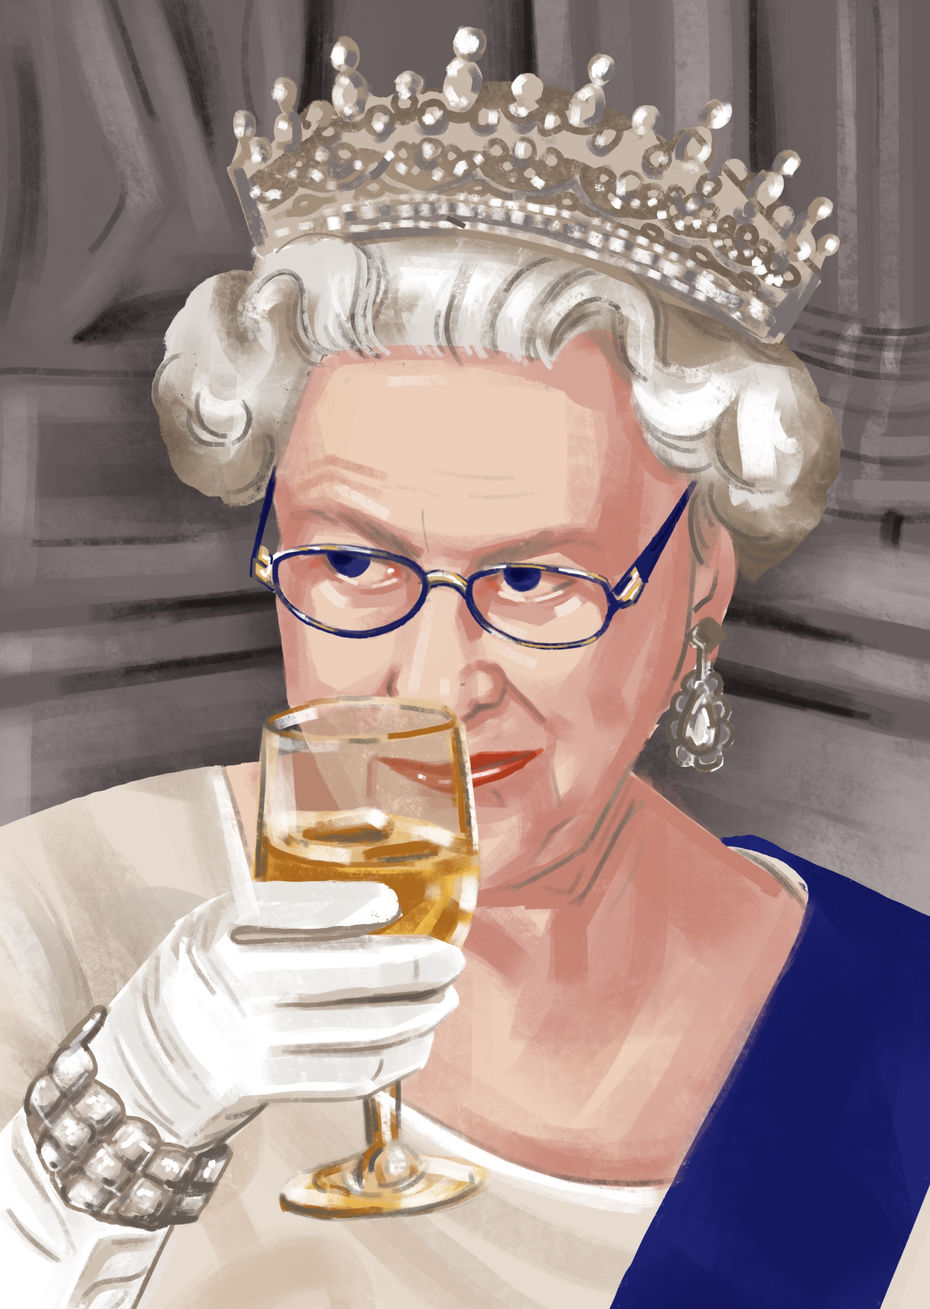 Полина Честнова<br/>Иллюстрация к статье «10 фактов о Королеве Елизавете II»